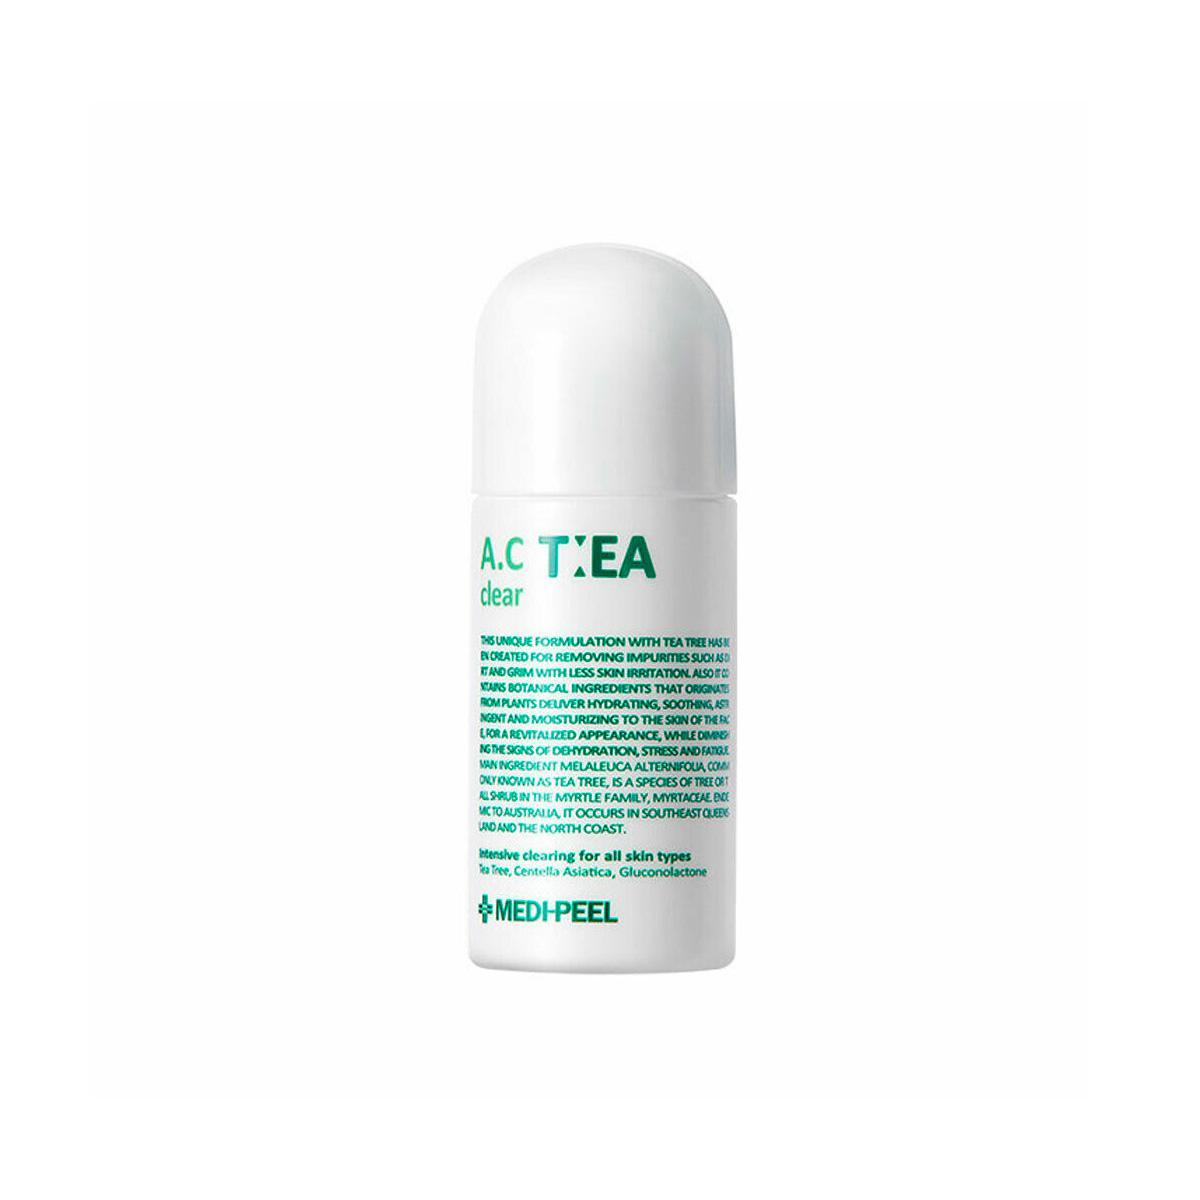 MEDI-PEEL Krema protiv akni za sve tipove kože - A.C Tea Clear 50ml